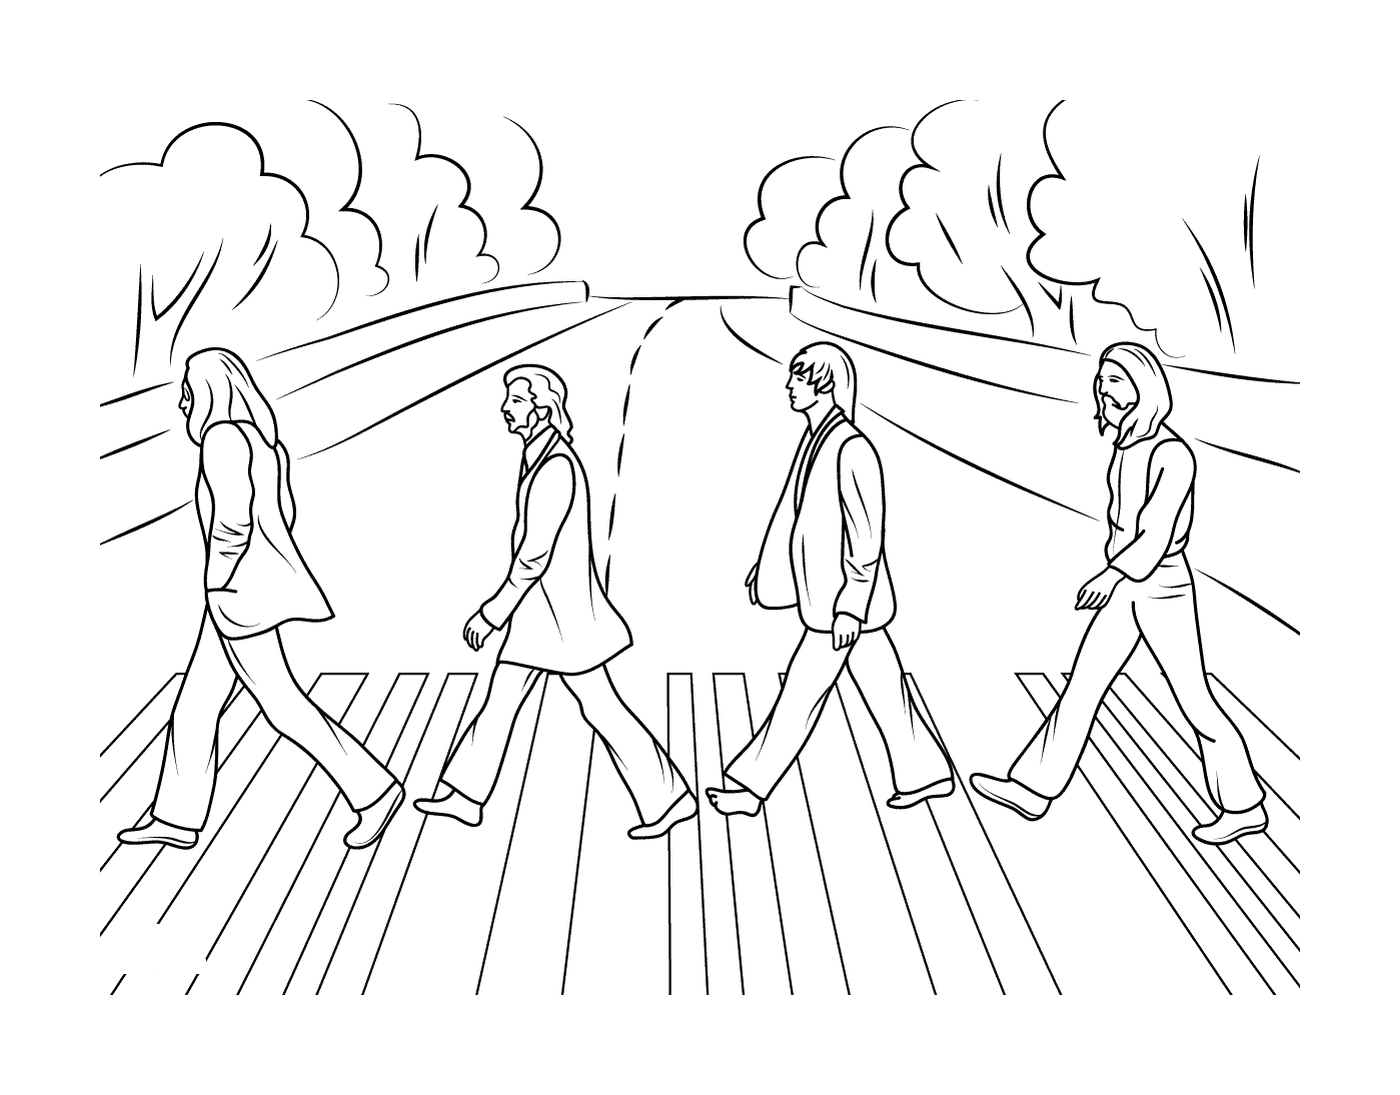  Um grupo de pessoas atravessando uma rua 